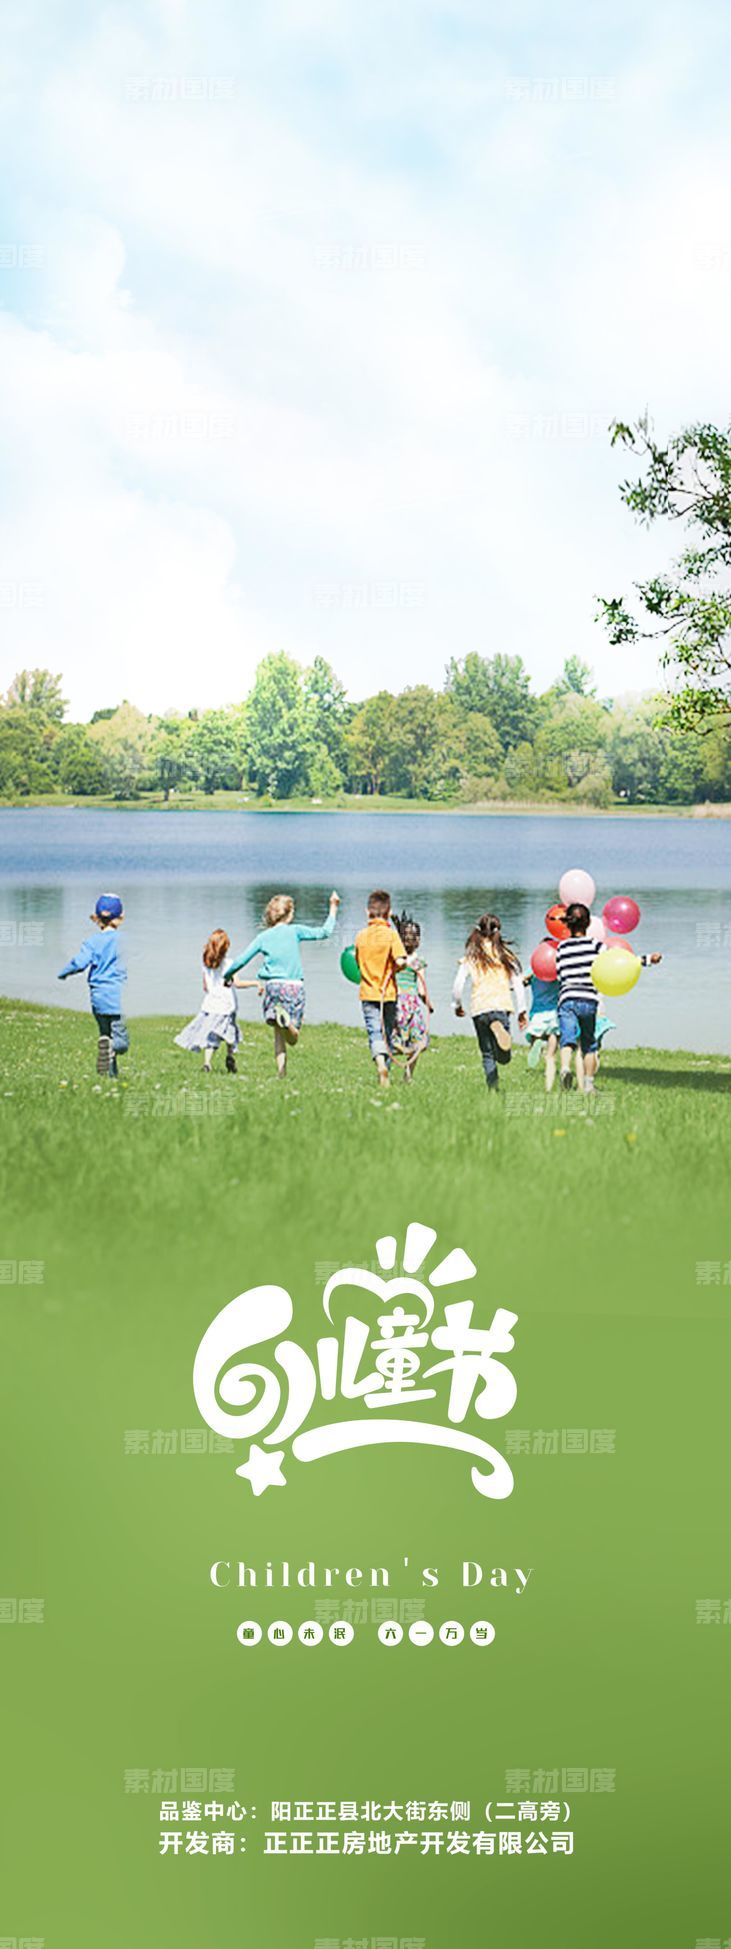 61 儿童节 玩耍 绿色地产海报